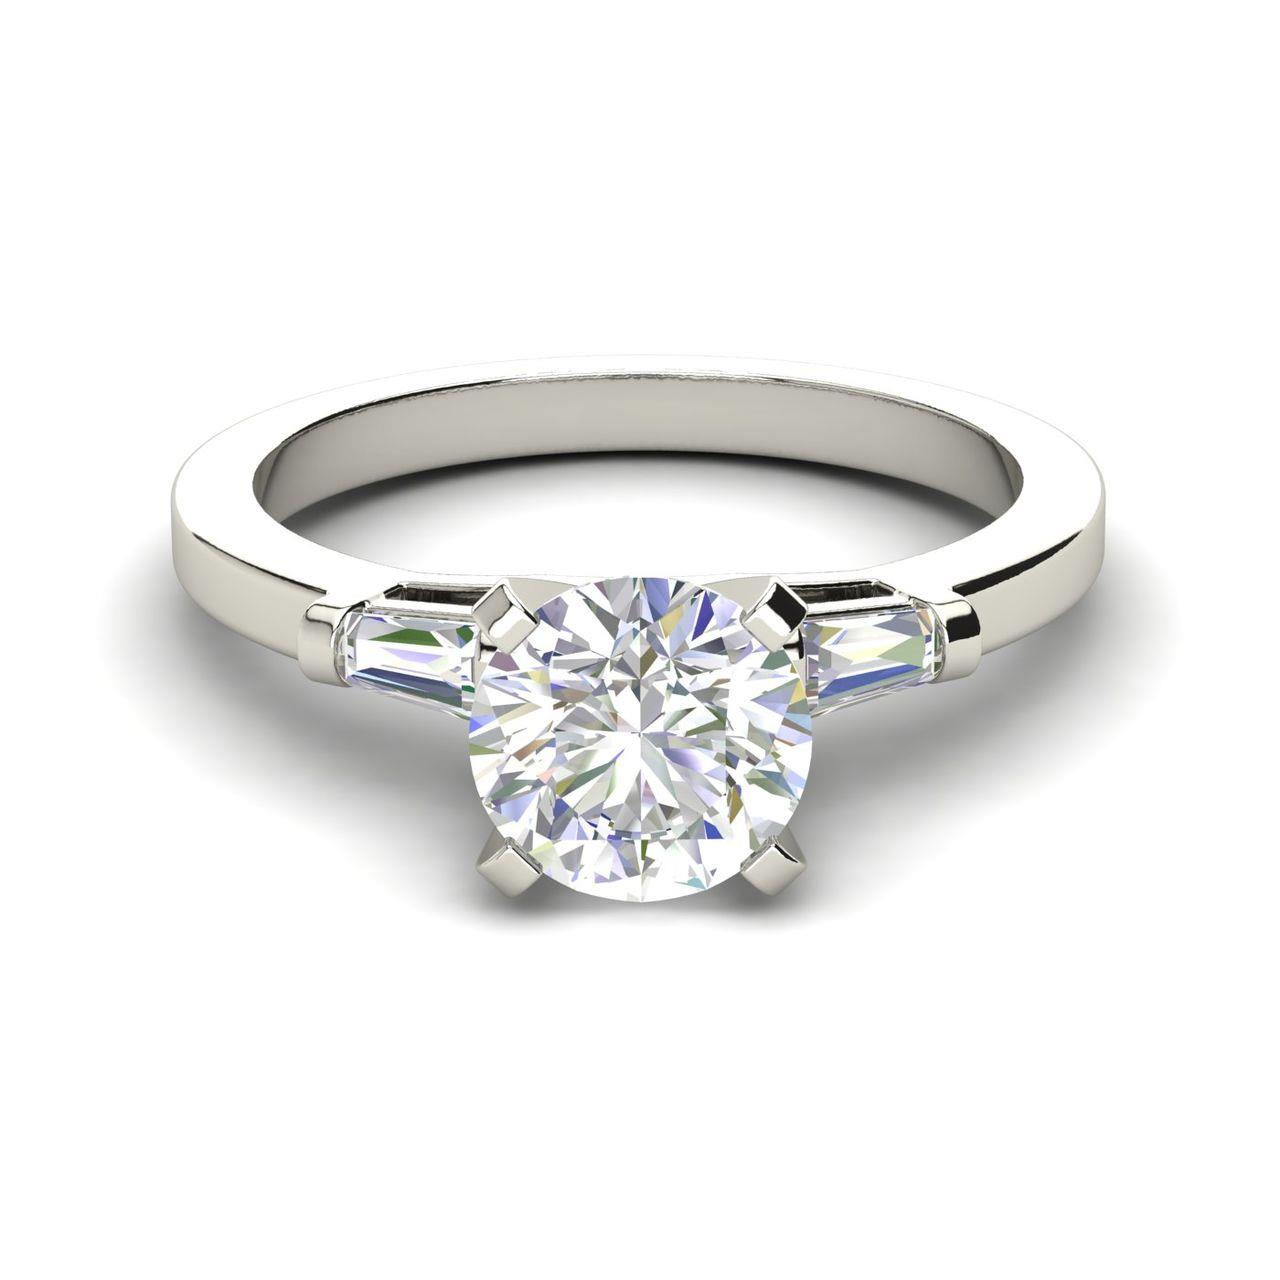 Baguette Accents 0.8 Carat Round Cut Diamond Engagement Ring